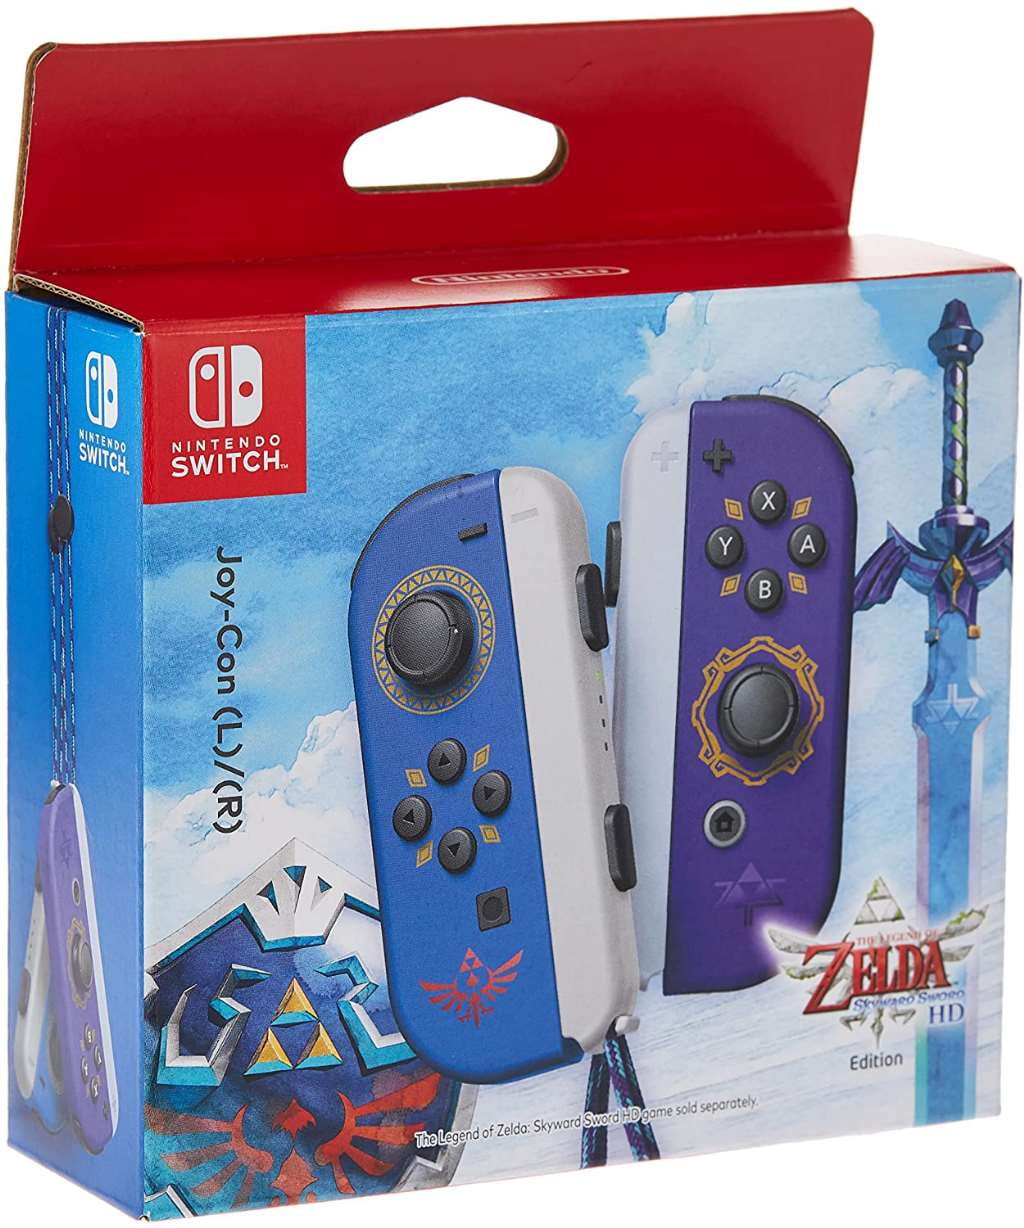 Legend of Zelda Skyward Sword Edition Joy Con Controllers [Nintendo]